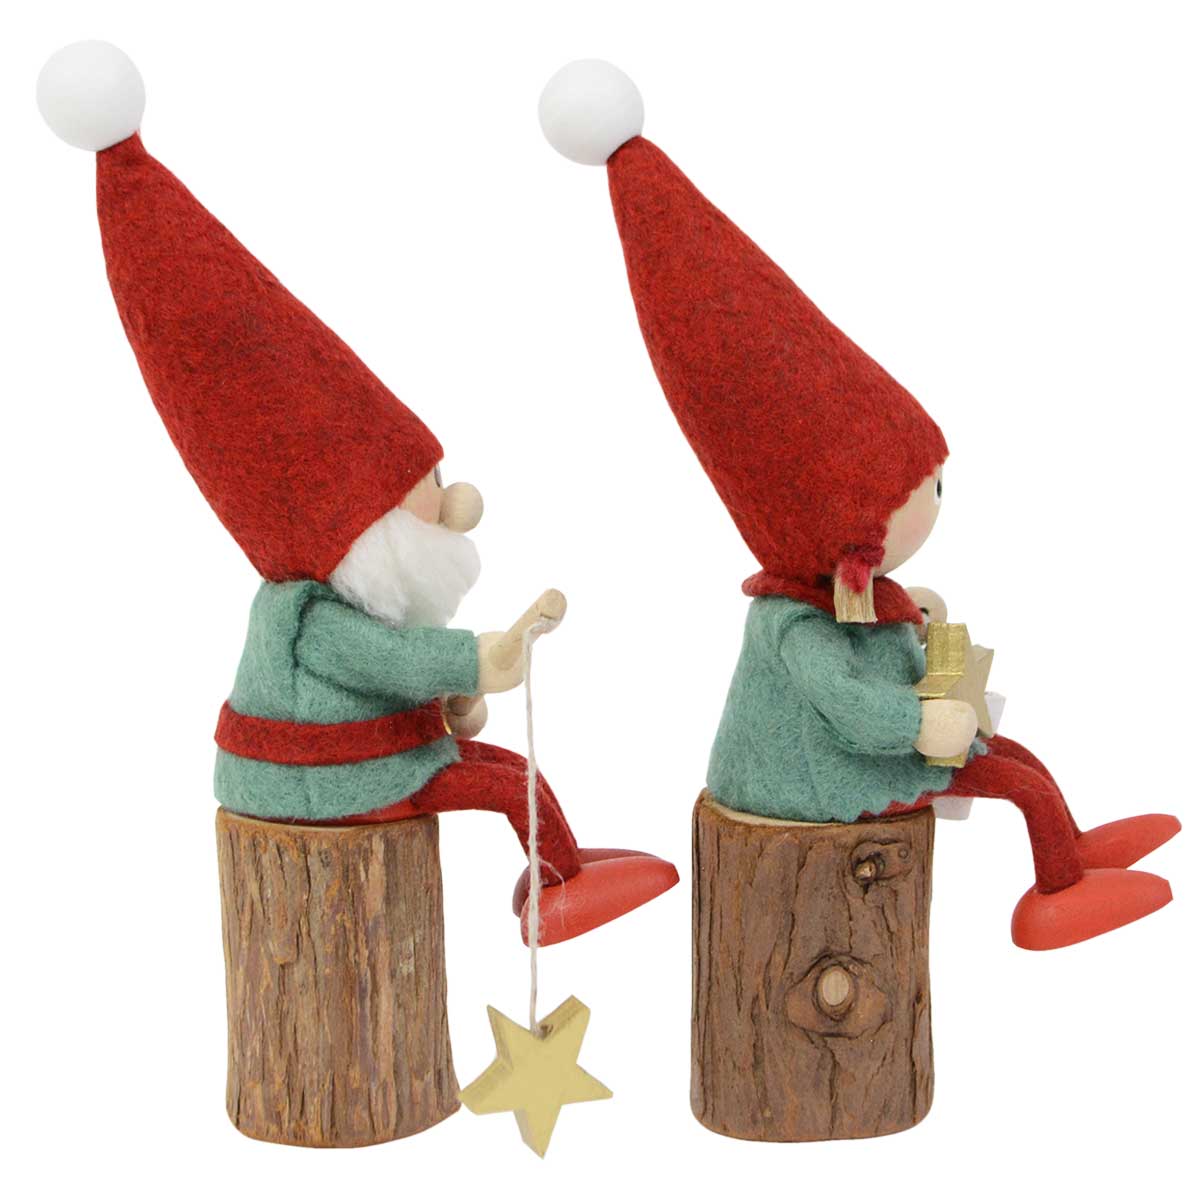 【北欧雑貨オリジナル】NORDIKA nisse ノルディカ ニッセ クリスマス 木製人形 ( 星をあつめるニッセ )